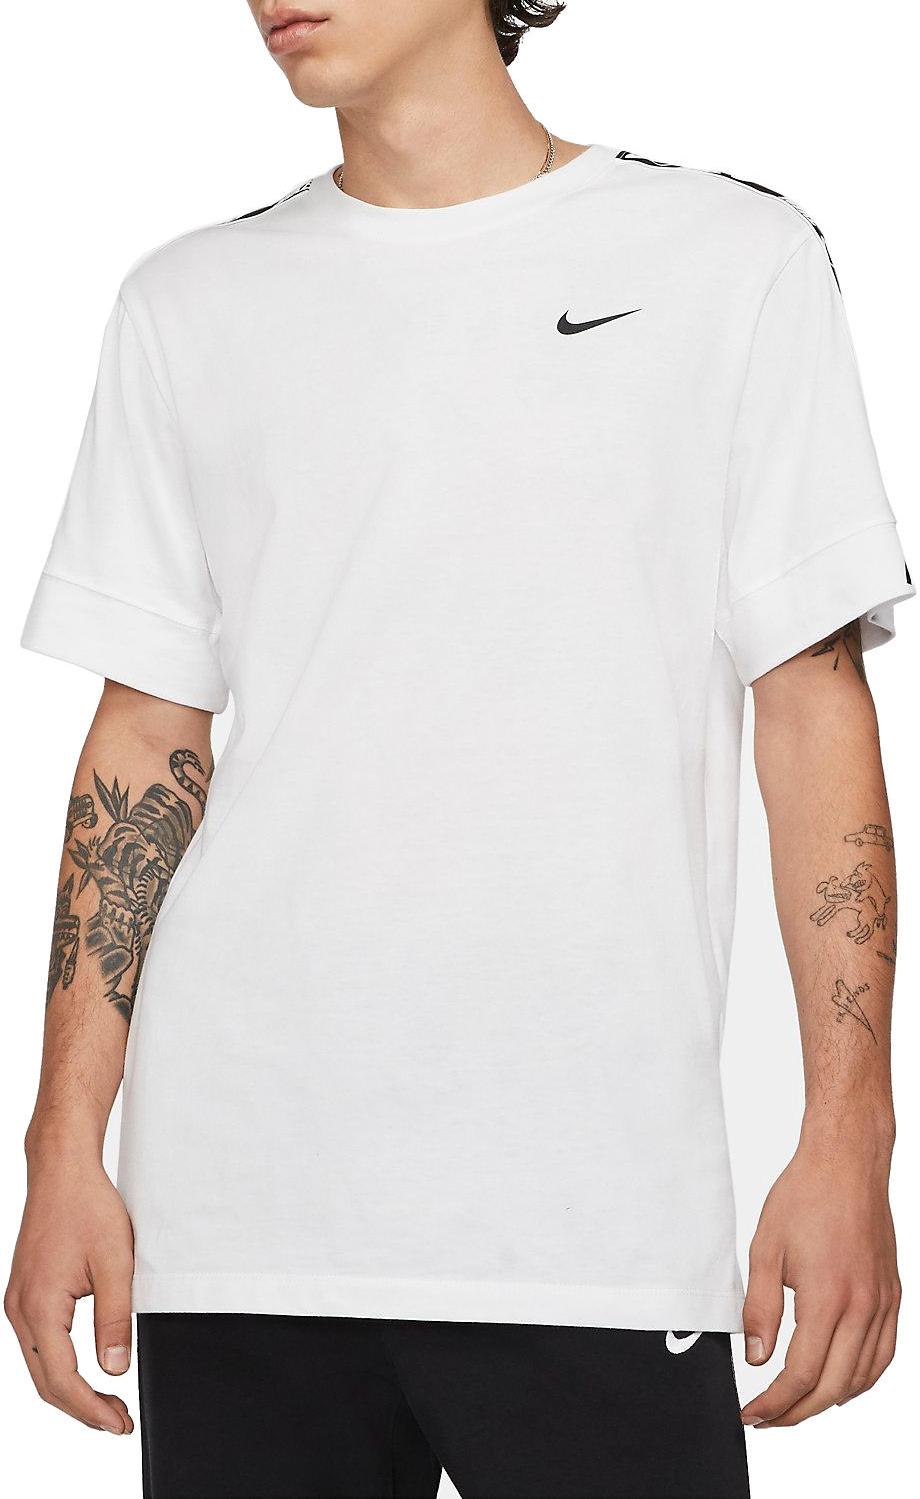 Tričko Nike Repeat T-Shirt